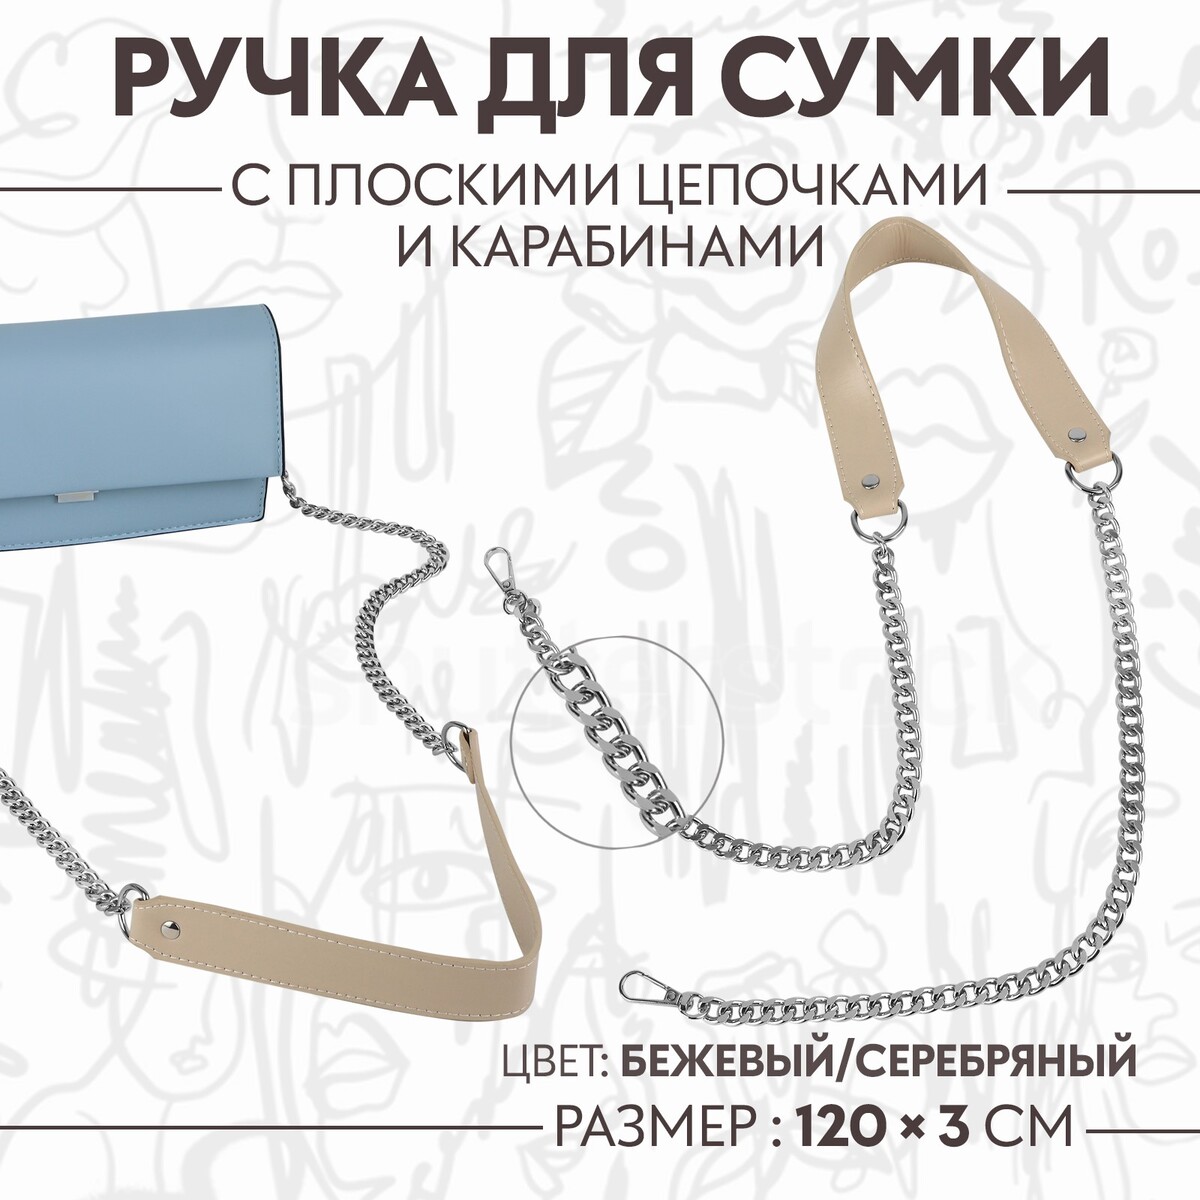 Ручка для сумки, с плоскими цепочками и карабинами, 120 × 3 см, цвет бежевый/серебряный ручка для сумки с плоскими цепочками и карабинами 120 × 3 см бежевый серебряный